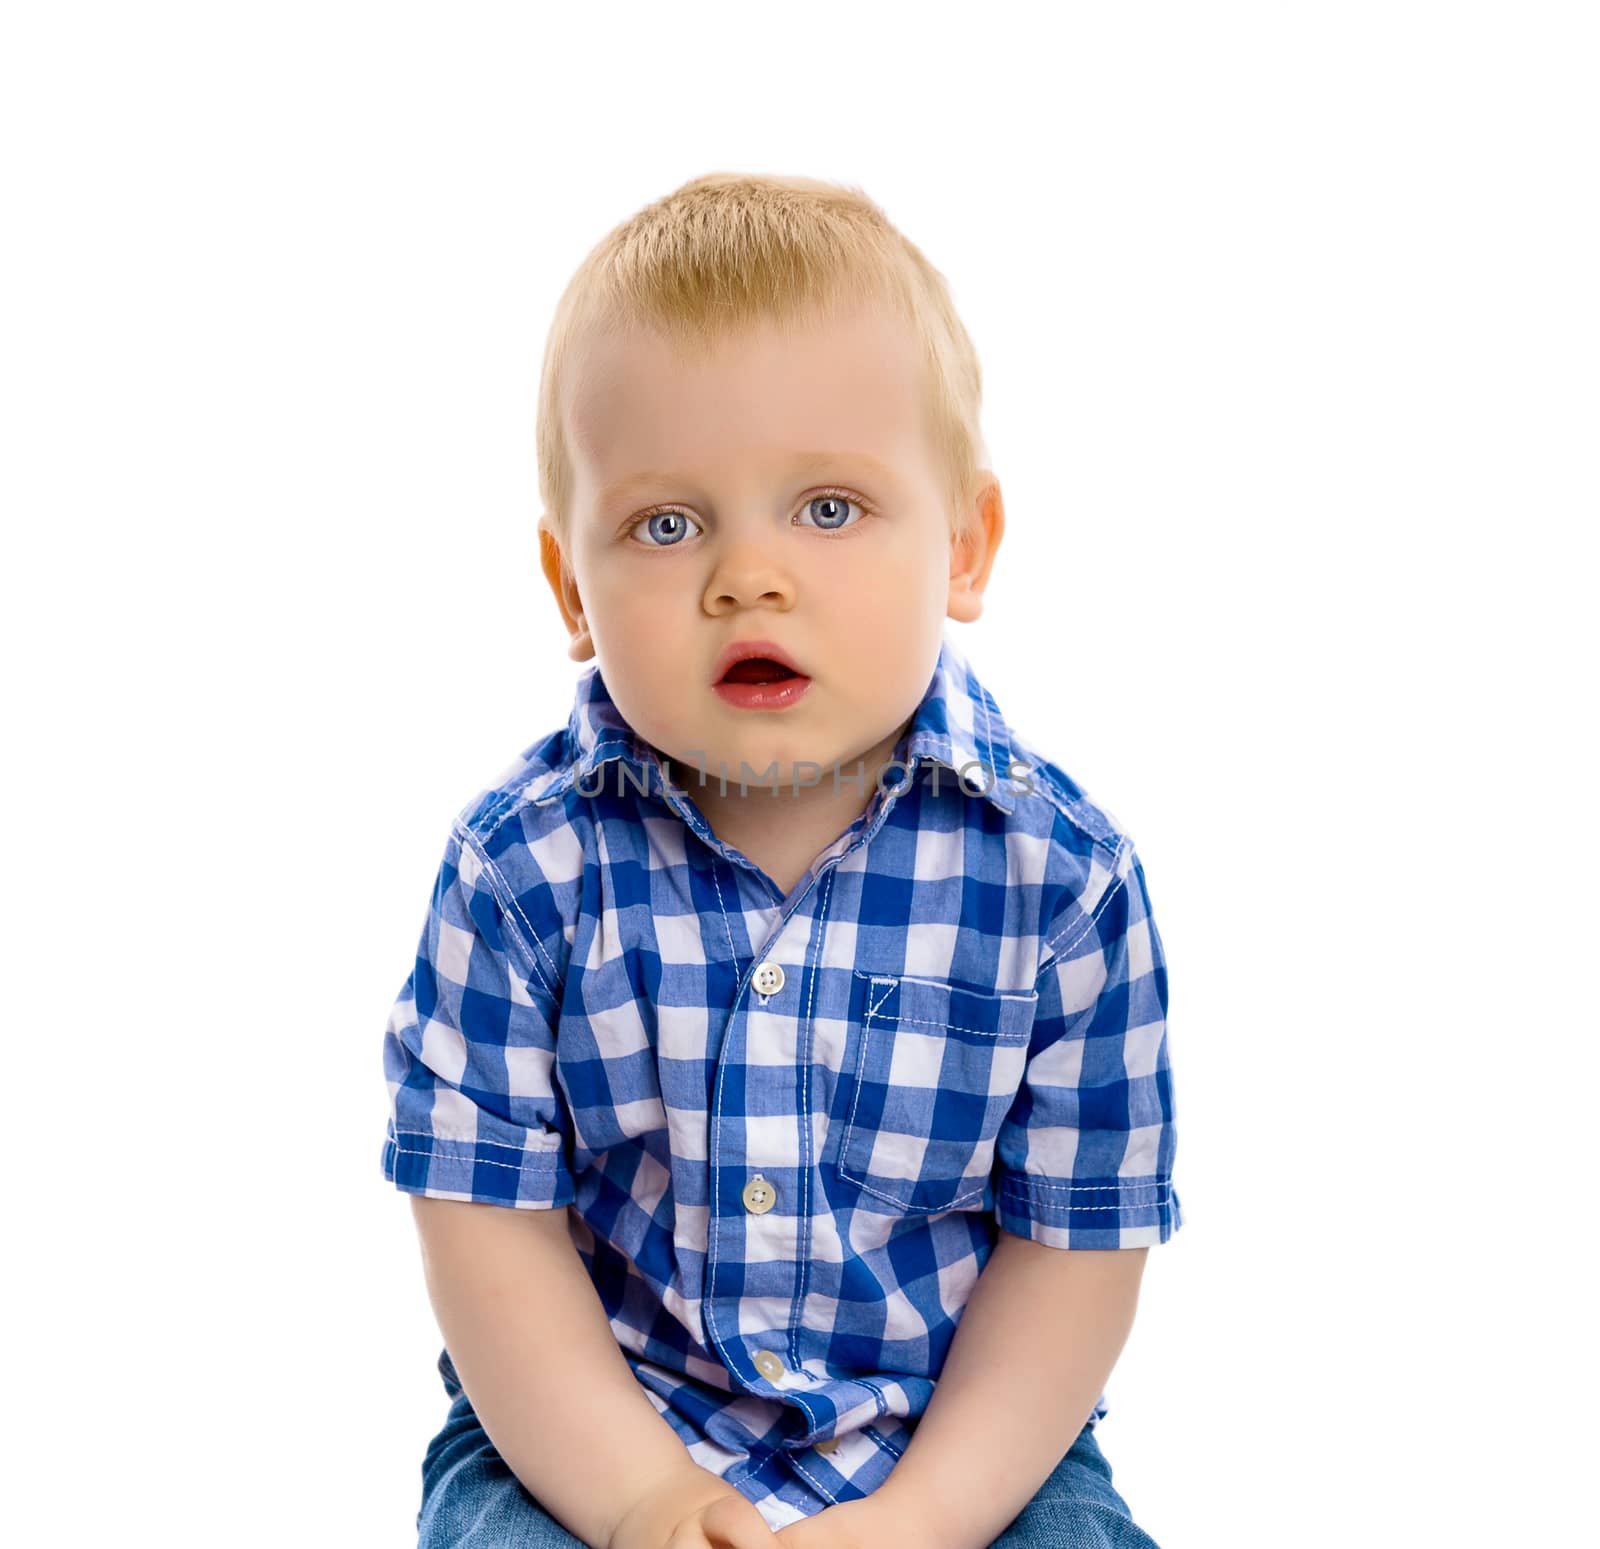 blue-eyed baby boy in a plaid shirt